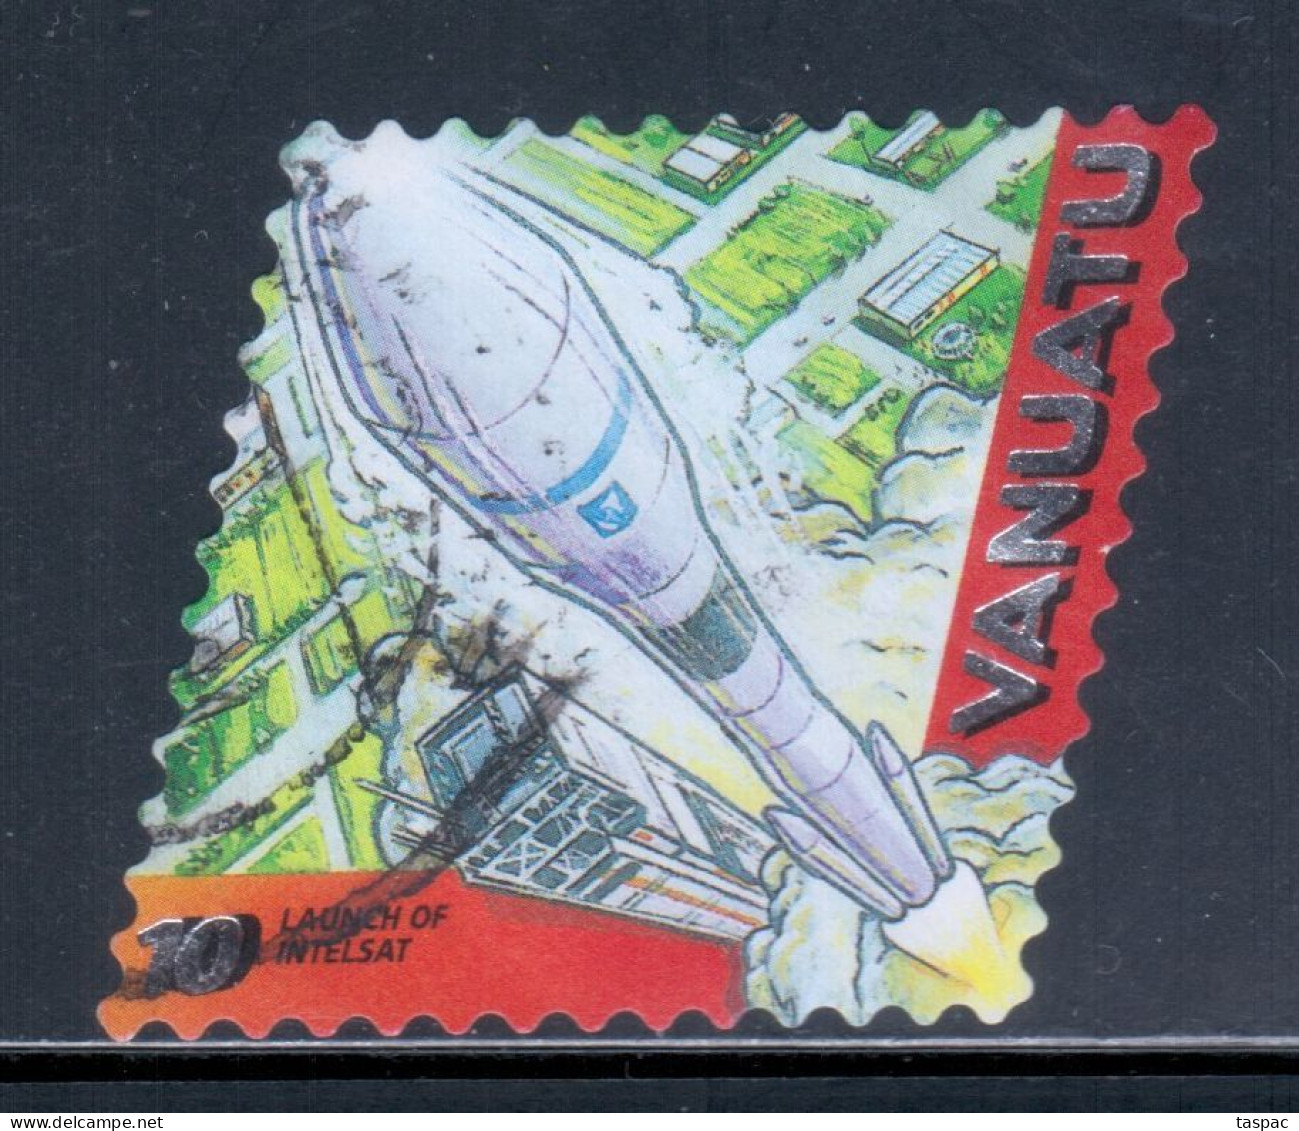 Vanuatu 2000 Mi# 1112 Used - Short Set - Launch Of Intelsat / Space - Oceanía